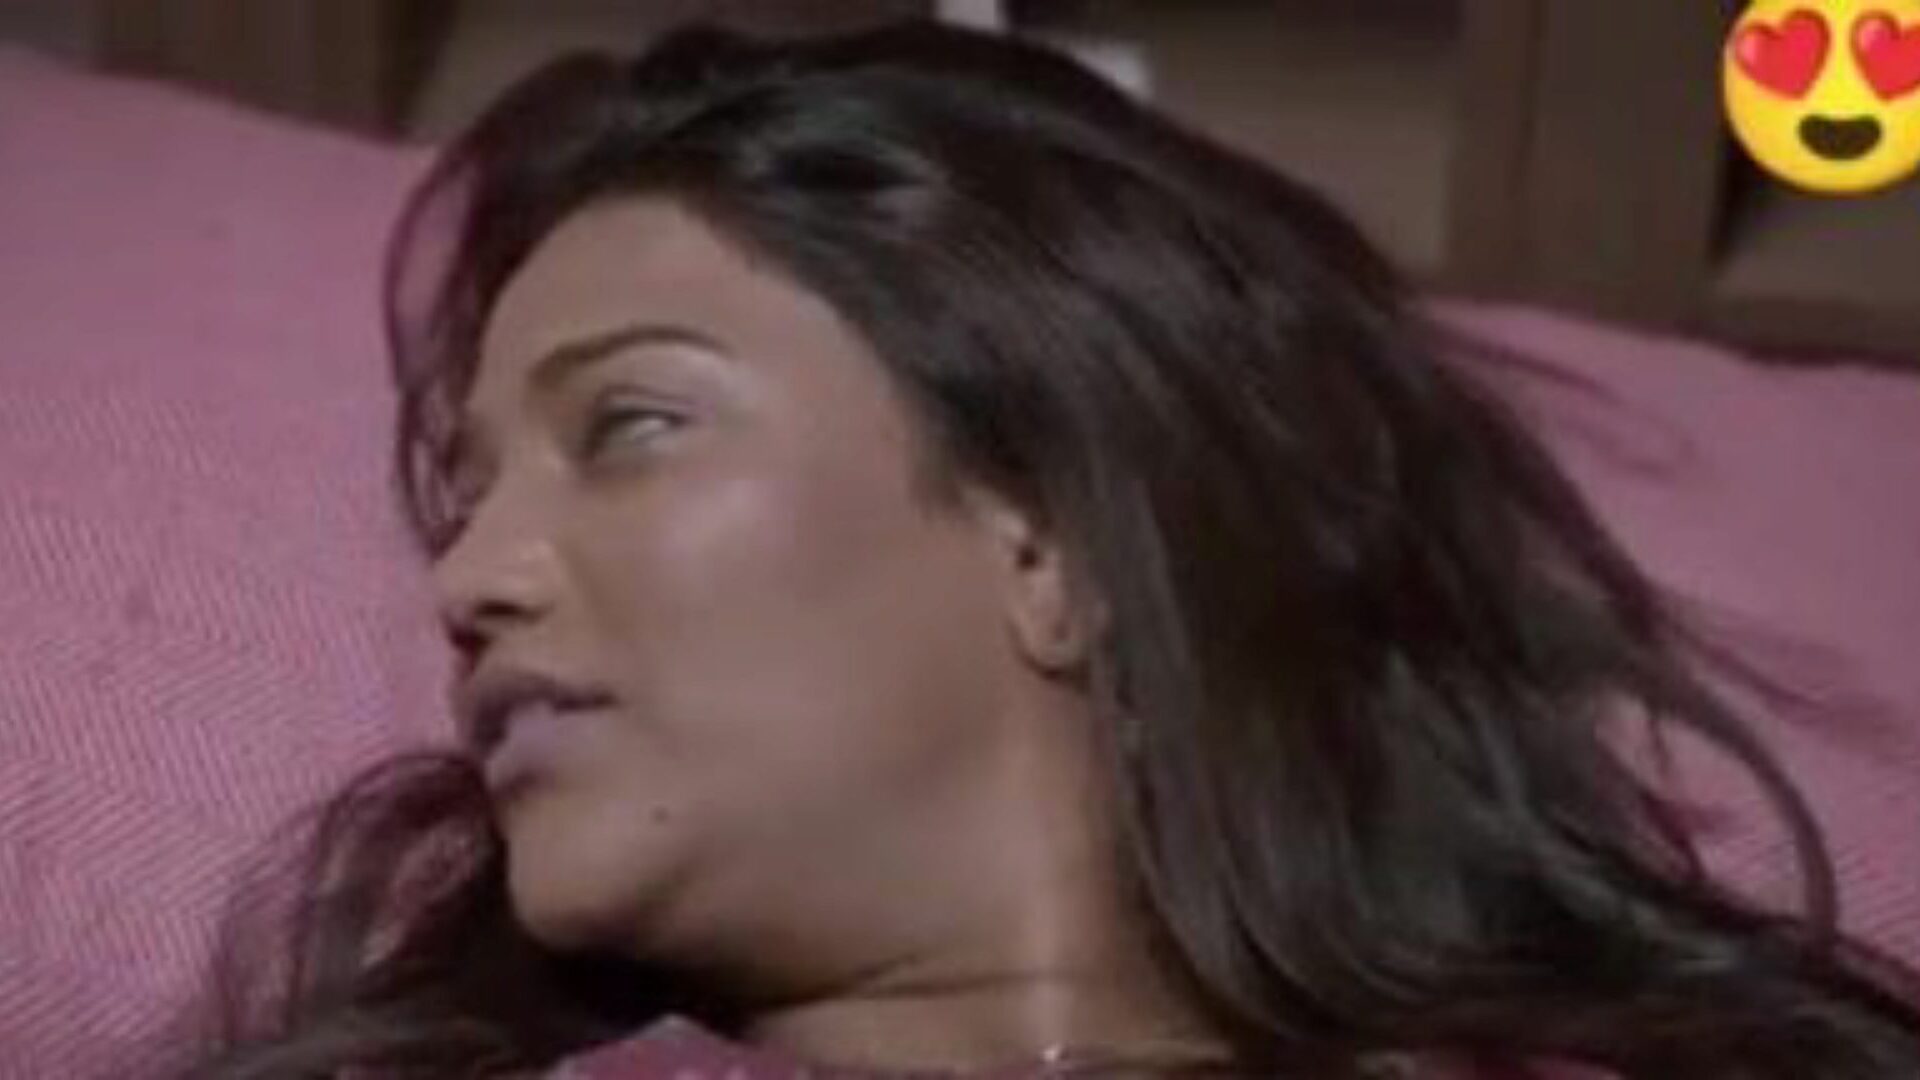 doppio sesso con sari dhamaka, porno indiano gratuito da: xhamster guarda il film sessuale con doppio dhamaka saree su xhamster, l'enorme risorsa web del canale di rapporti sessuali con tonnellate di scene di film pornografici xxx e hindi di nuovo sesso indiano gratis